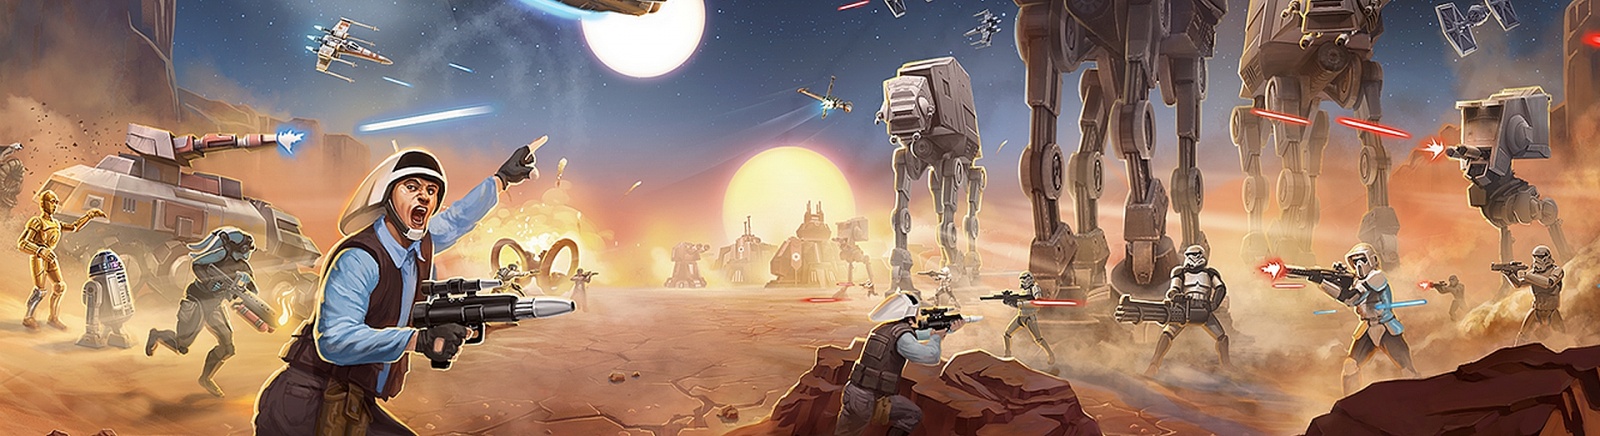 Дата выхода Star Wars: Commander (Звездные войны: Вторжение)  на iOS и Android в России и во всем мире